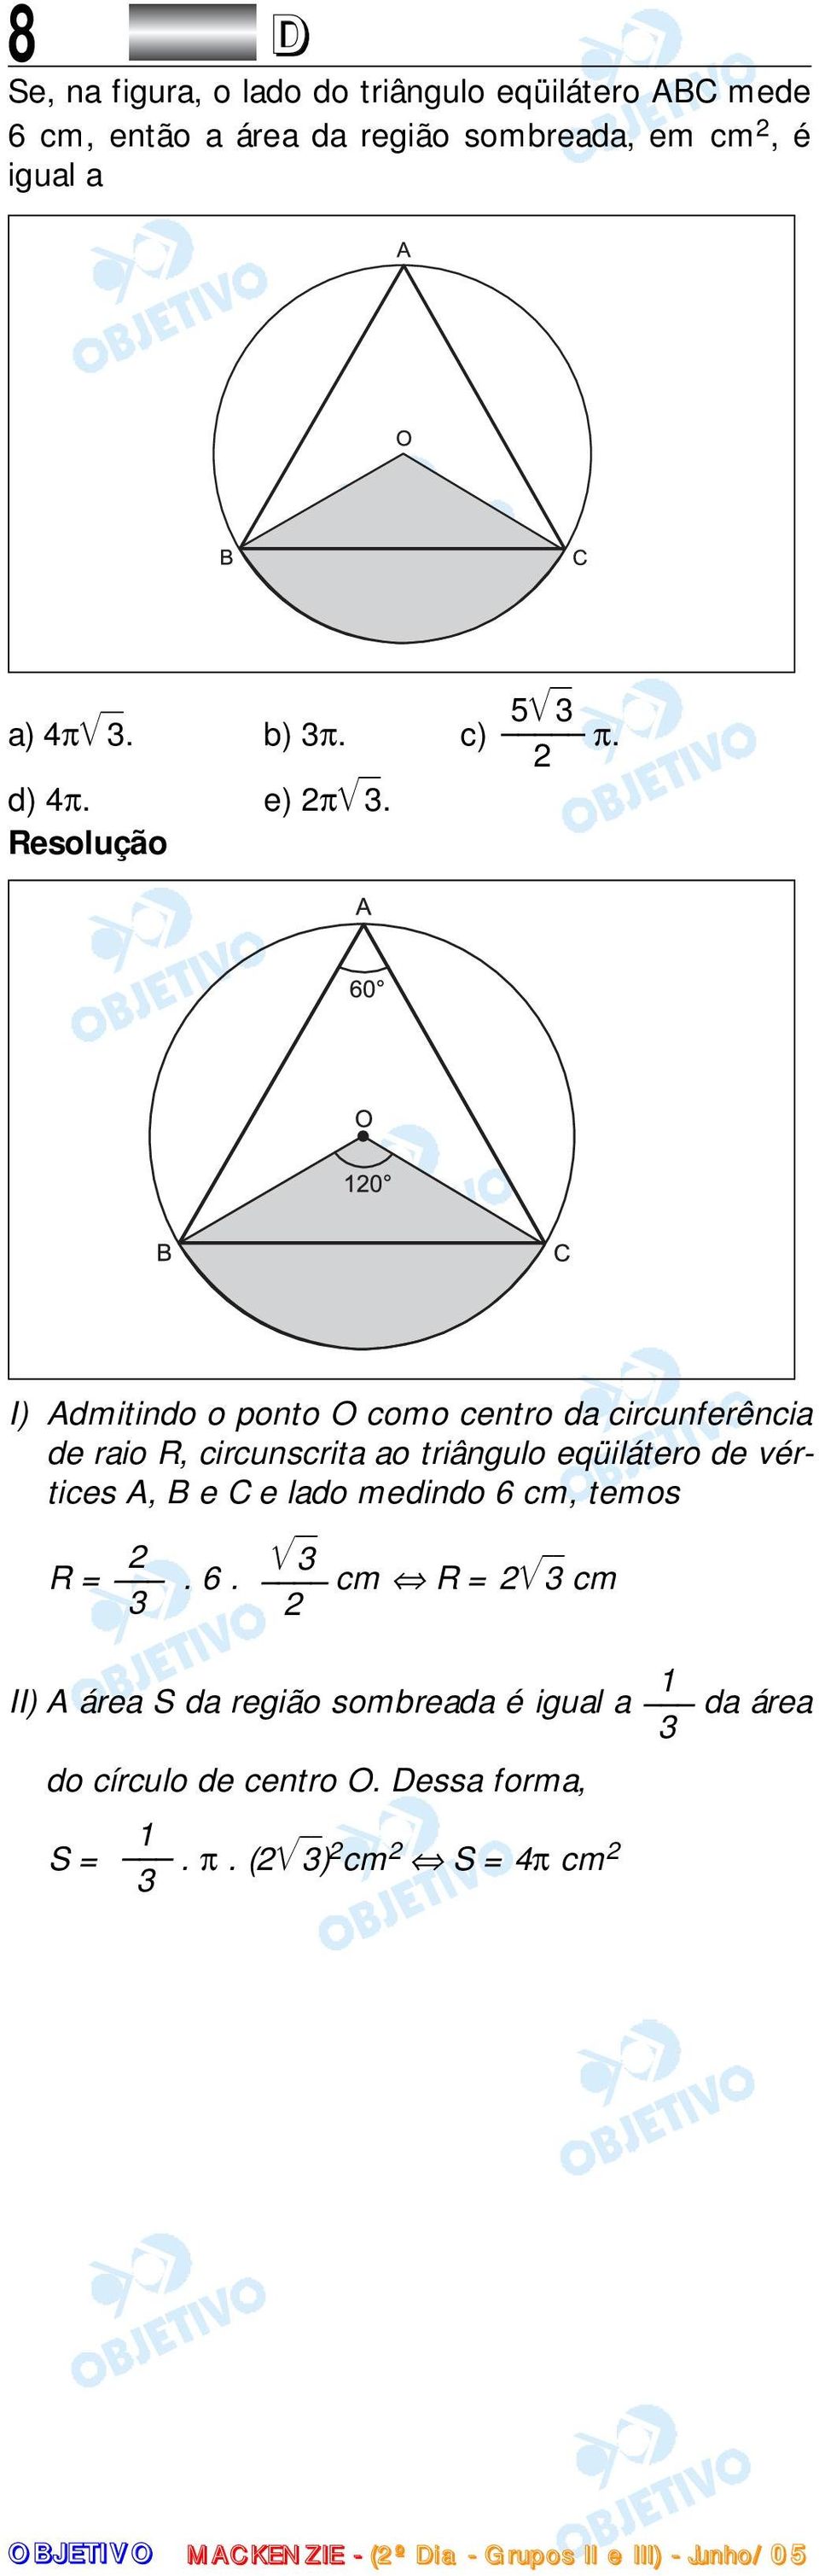 I) Admitindo o ponto O como centro da circunferência de raio R, circunscrita ao triângulo eqüilátero de vértices